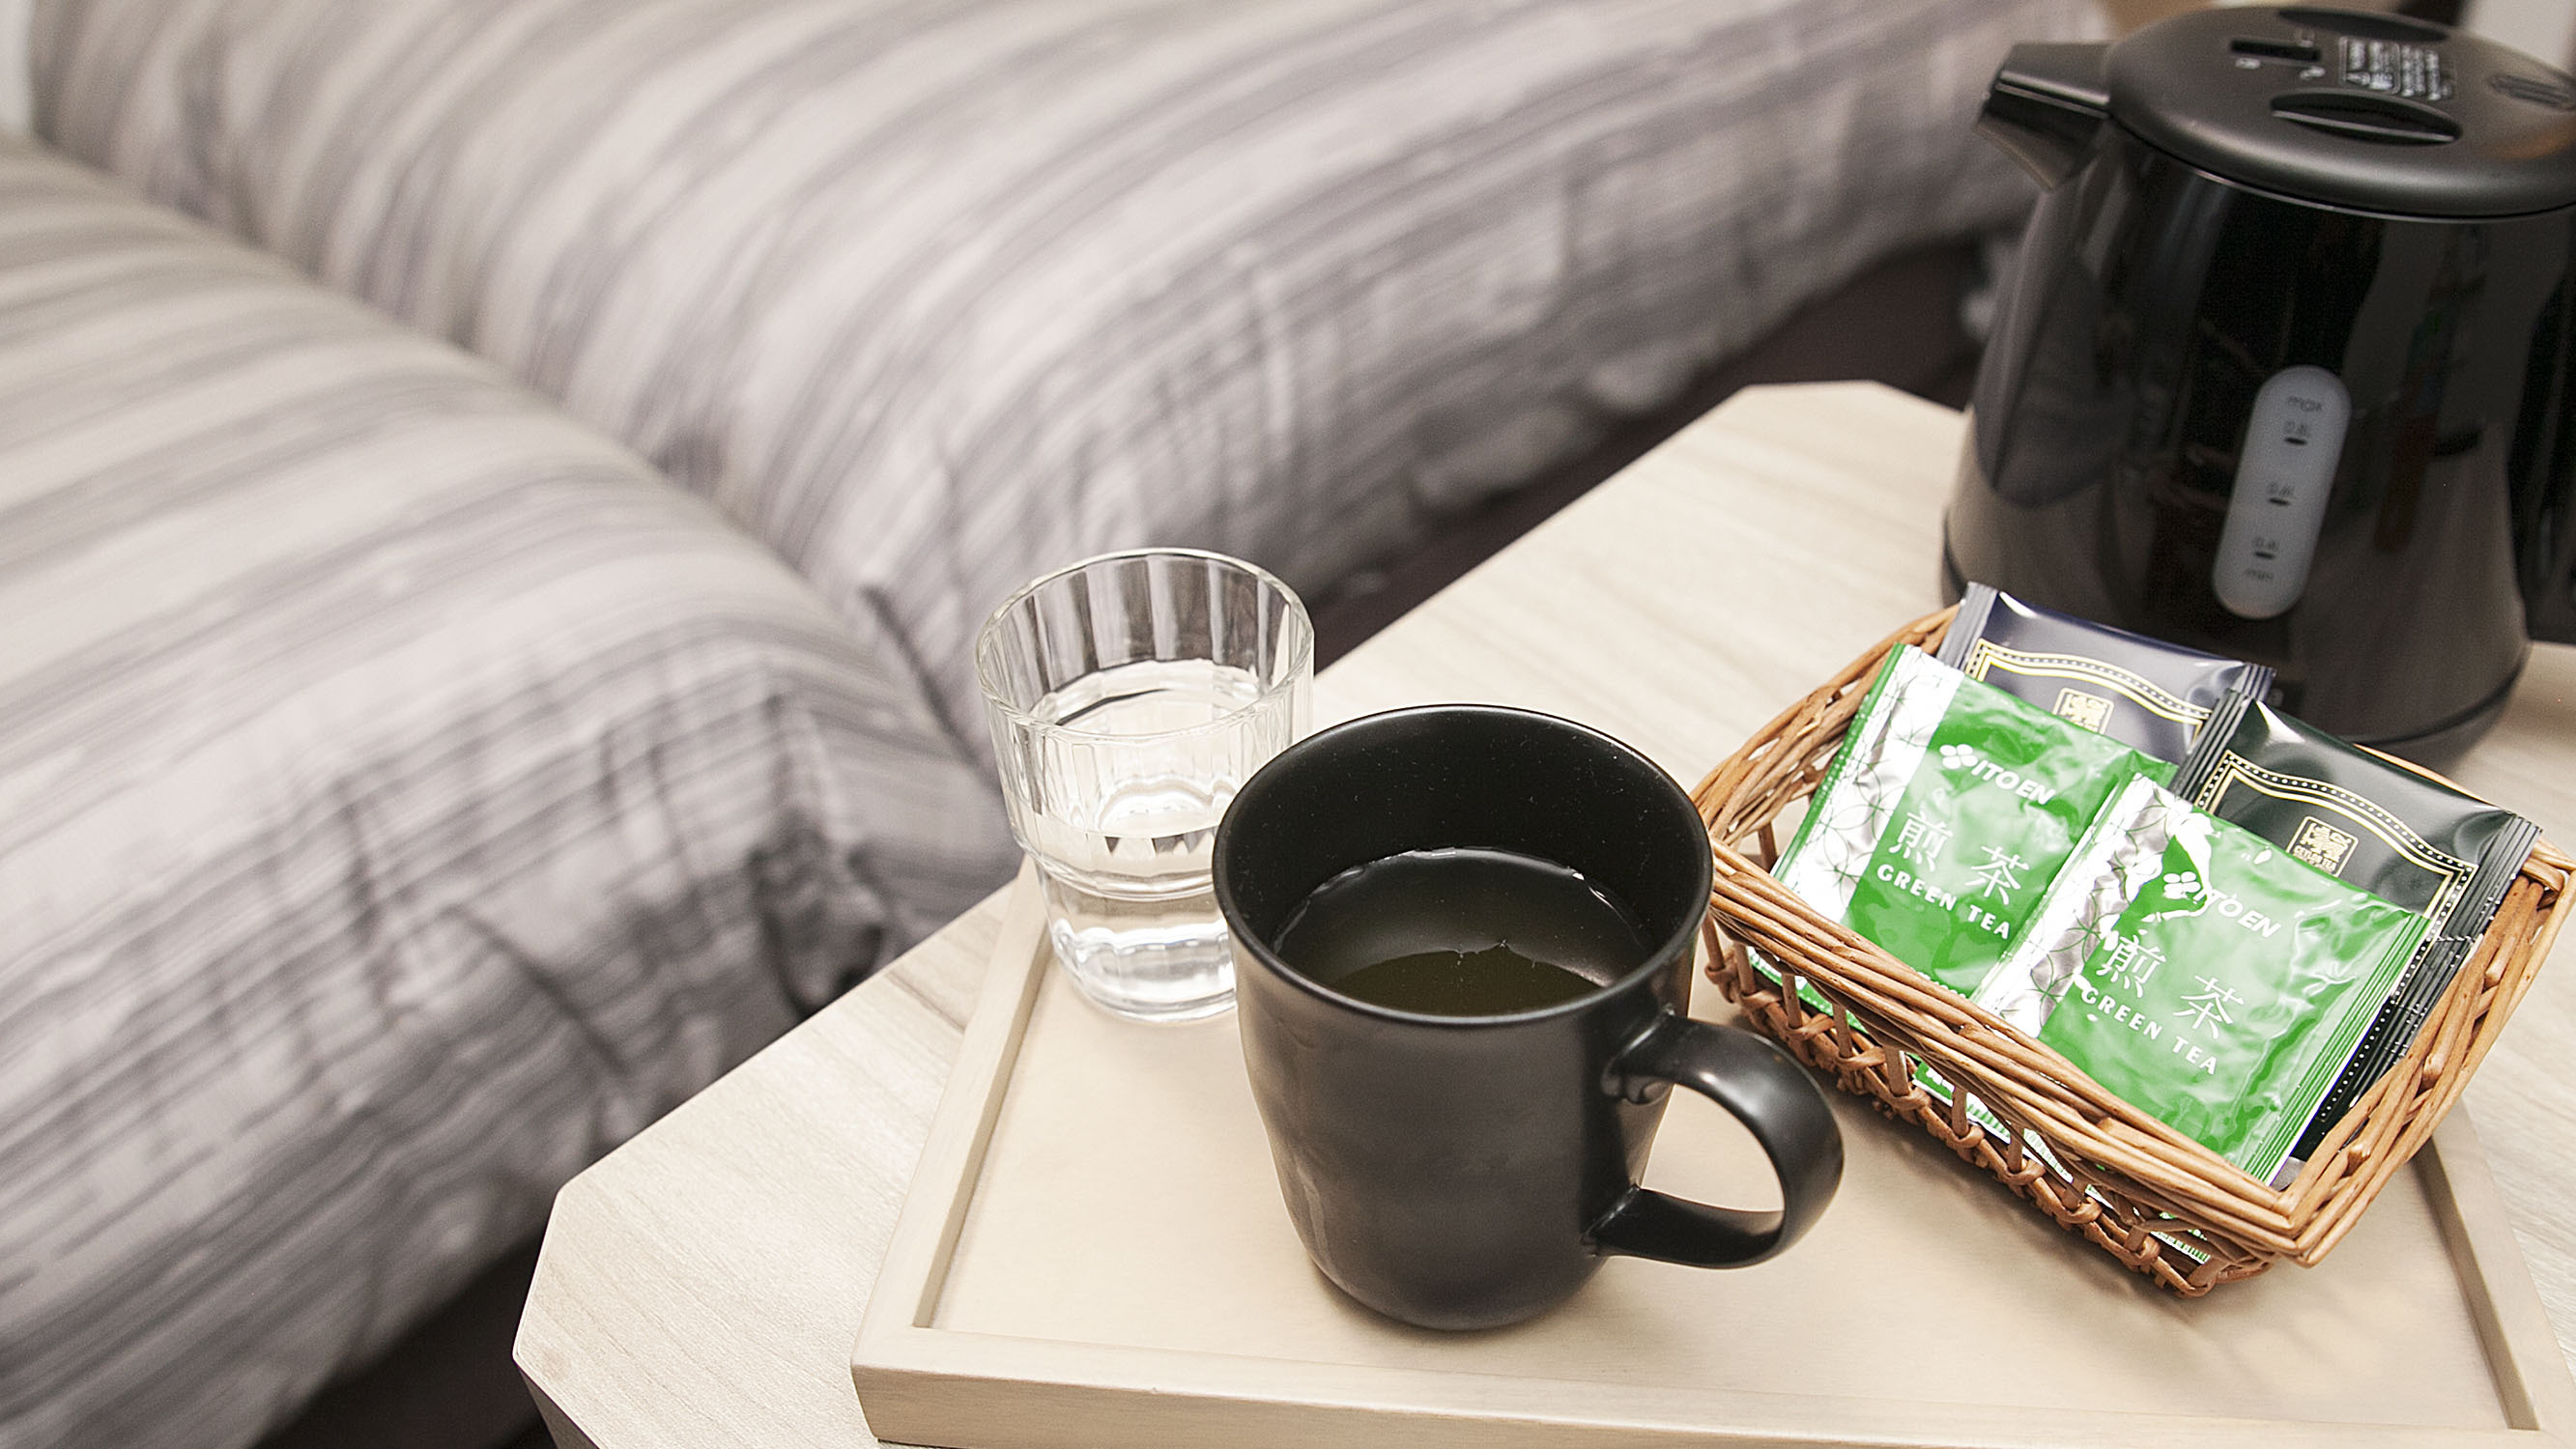 客室ポット・コップ緑茶と紅茶をご用意しております。